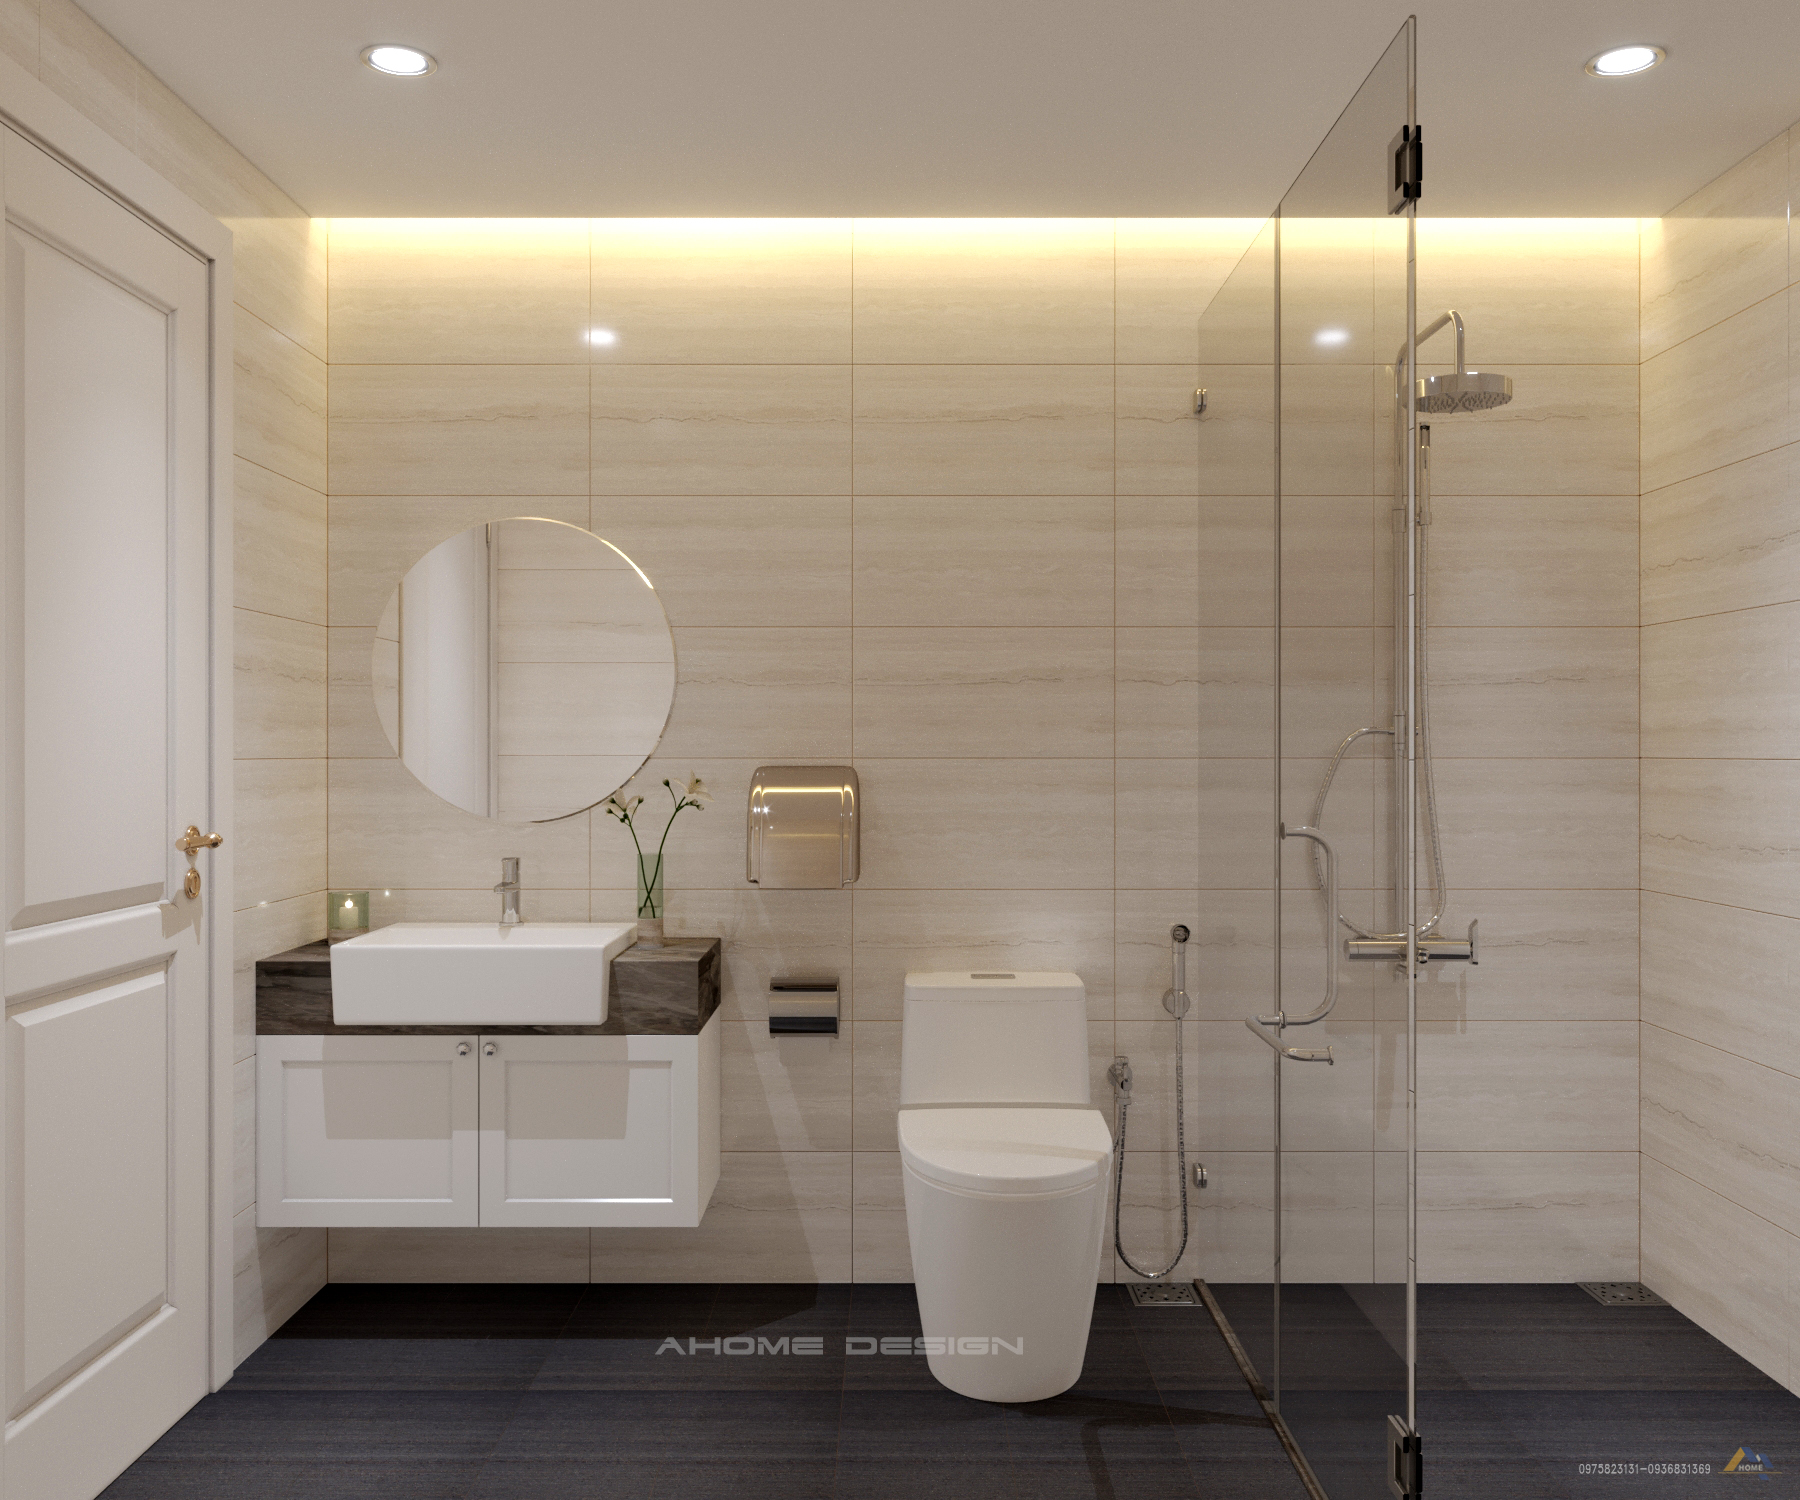 Phòng tắm đơn giản nhưng vẫn toát lên sự hiện đại, tiện nghi